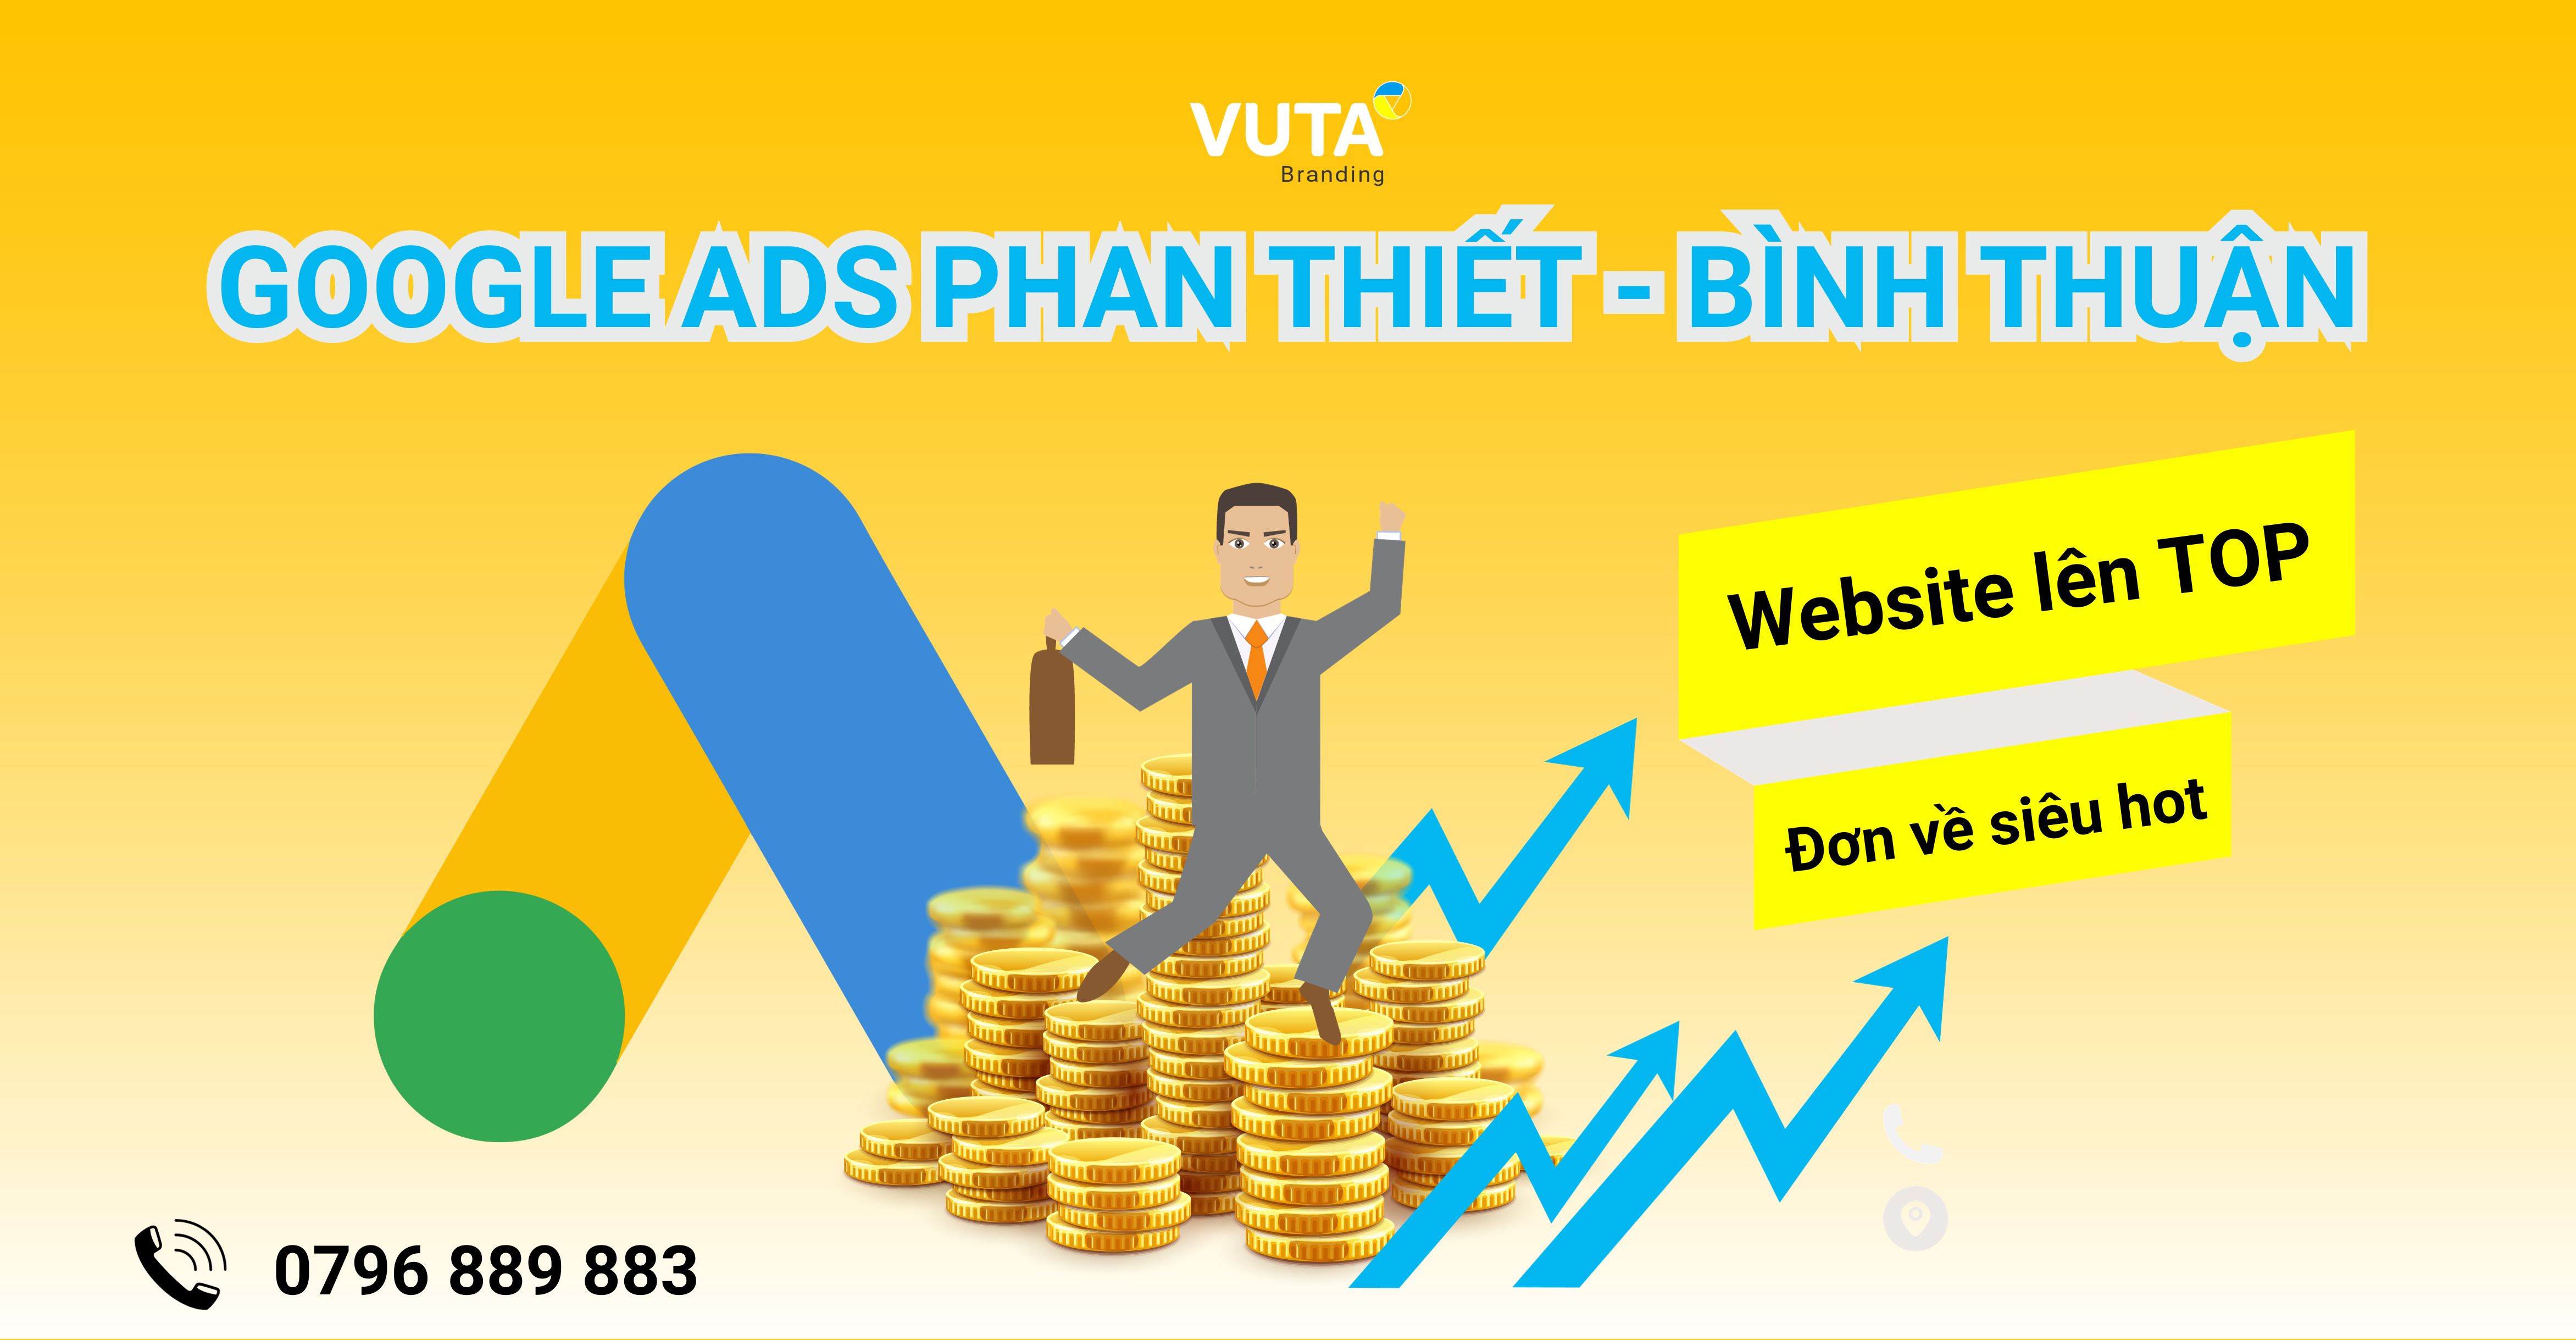 "Website Lên Top, Đơn Về Siêu Hot" Với Dịch Vụ Quảng Cáo Google Phan Thiết - Bình Thuận